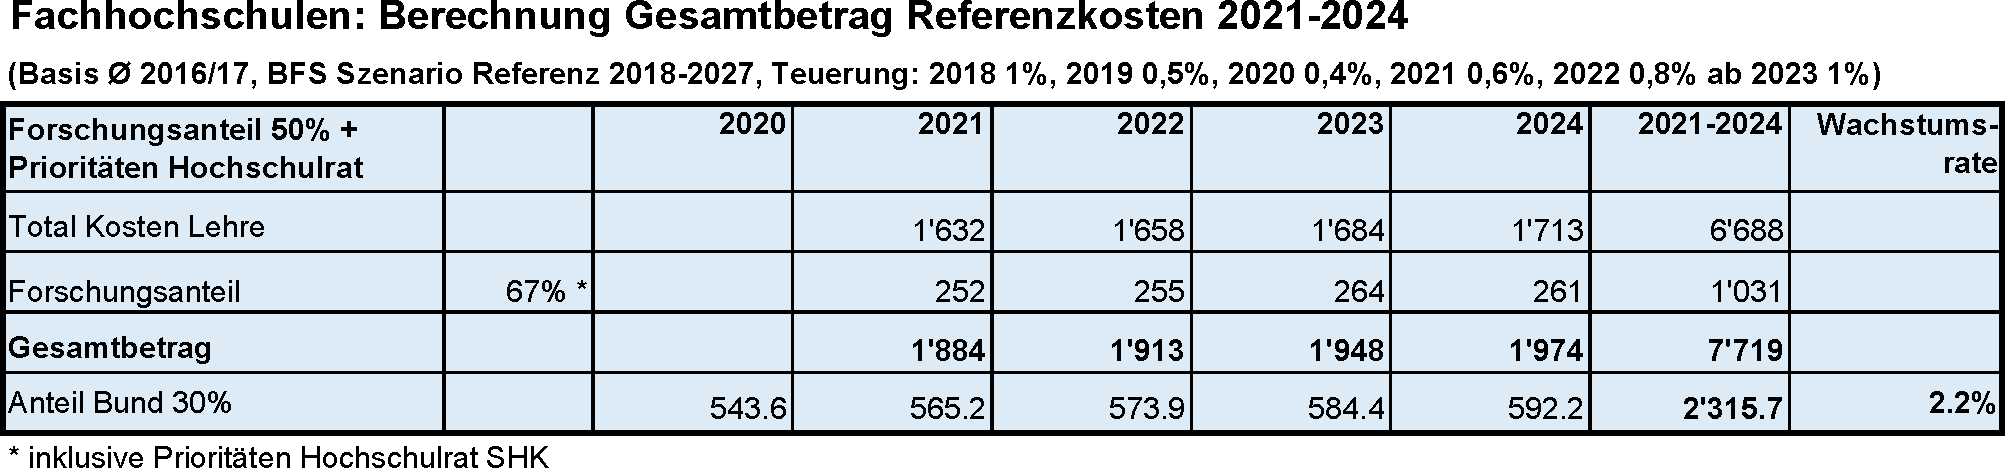 fachhochschulen_berechnung_gesamtbetrag_referenzkosten_2021_2024_de